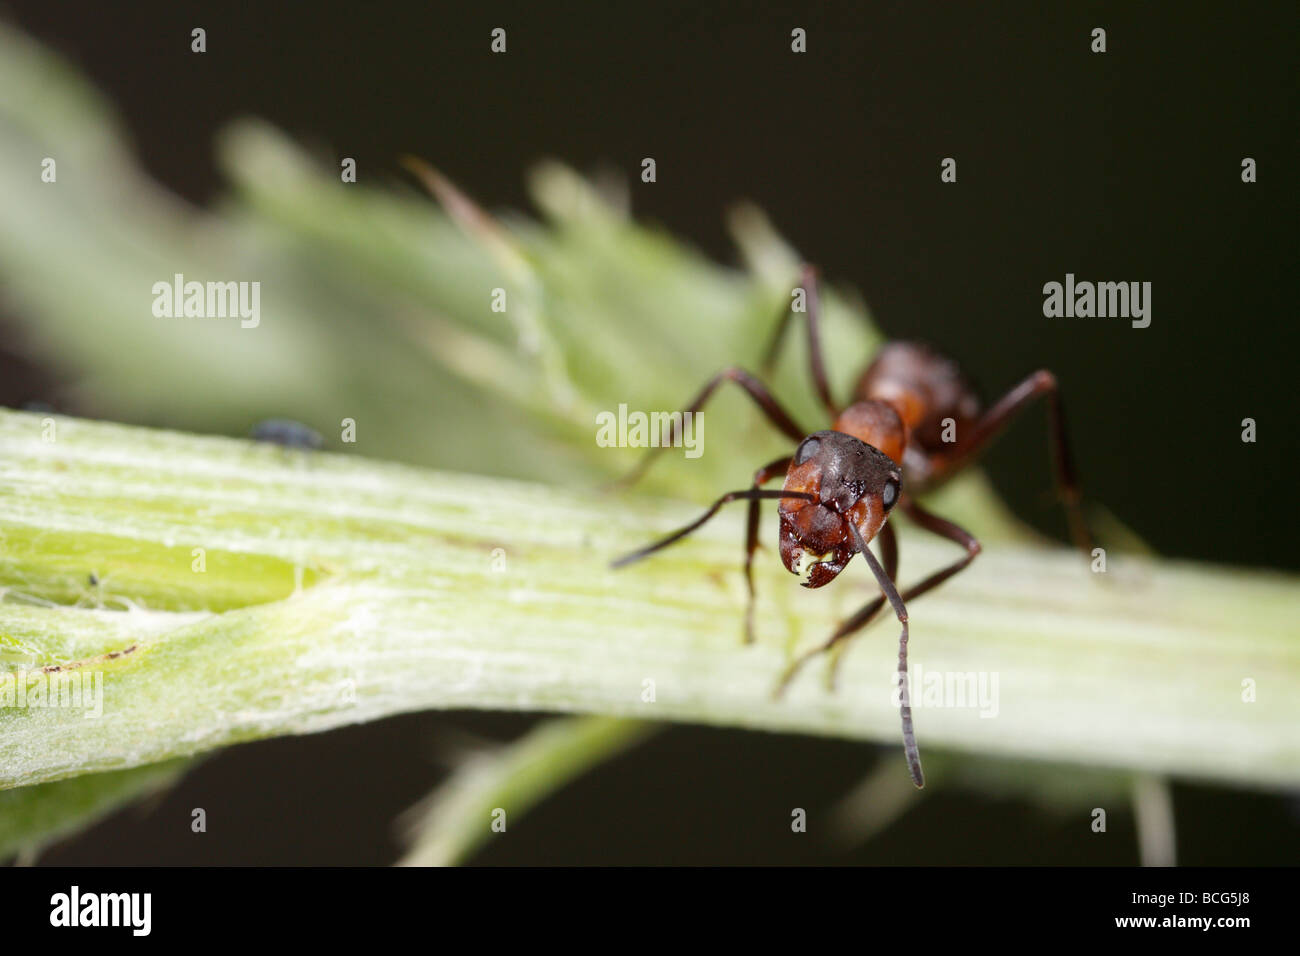 Caballo hormiga (Formica rufa) en una planta de tallo. El trabajador está mirando hacia la cámara. Foto de stock